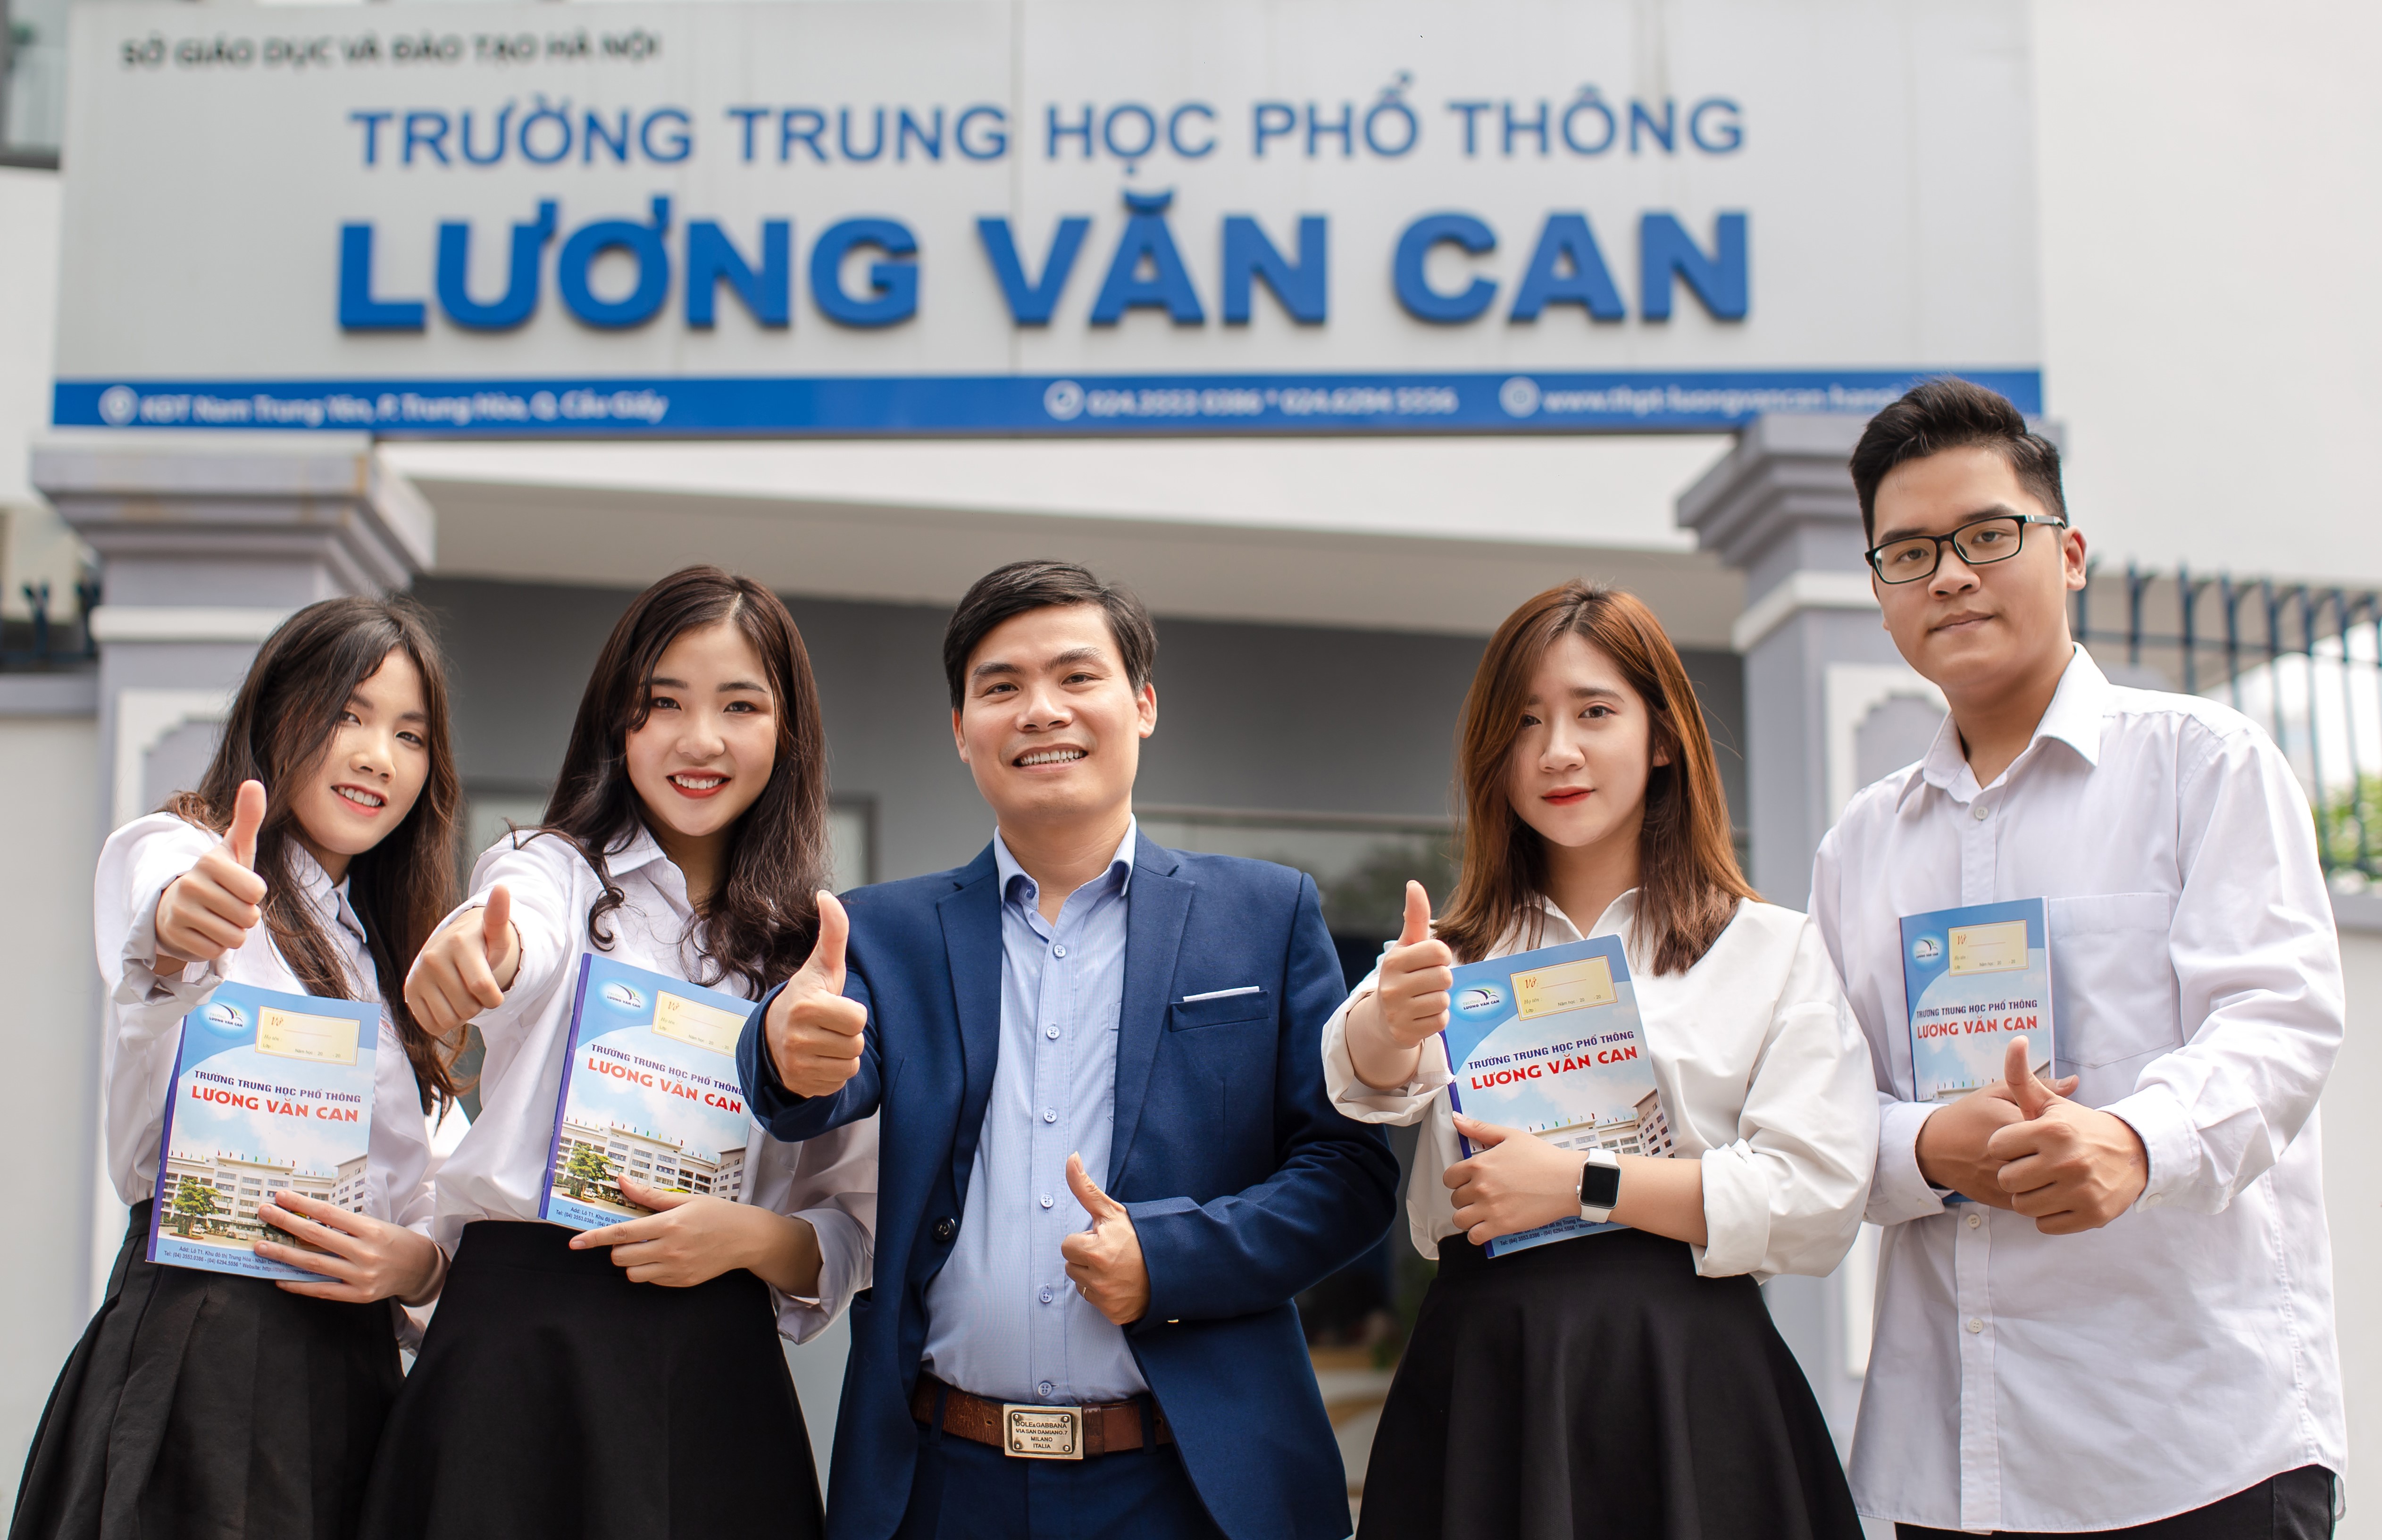 Trường THPT Lương Văn Can: Nơi ươm mầm cho những tài năng phát  triển.